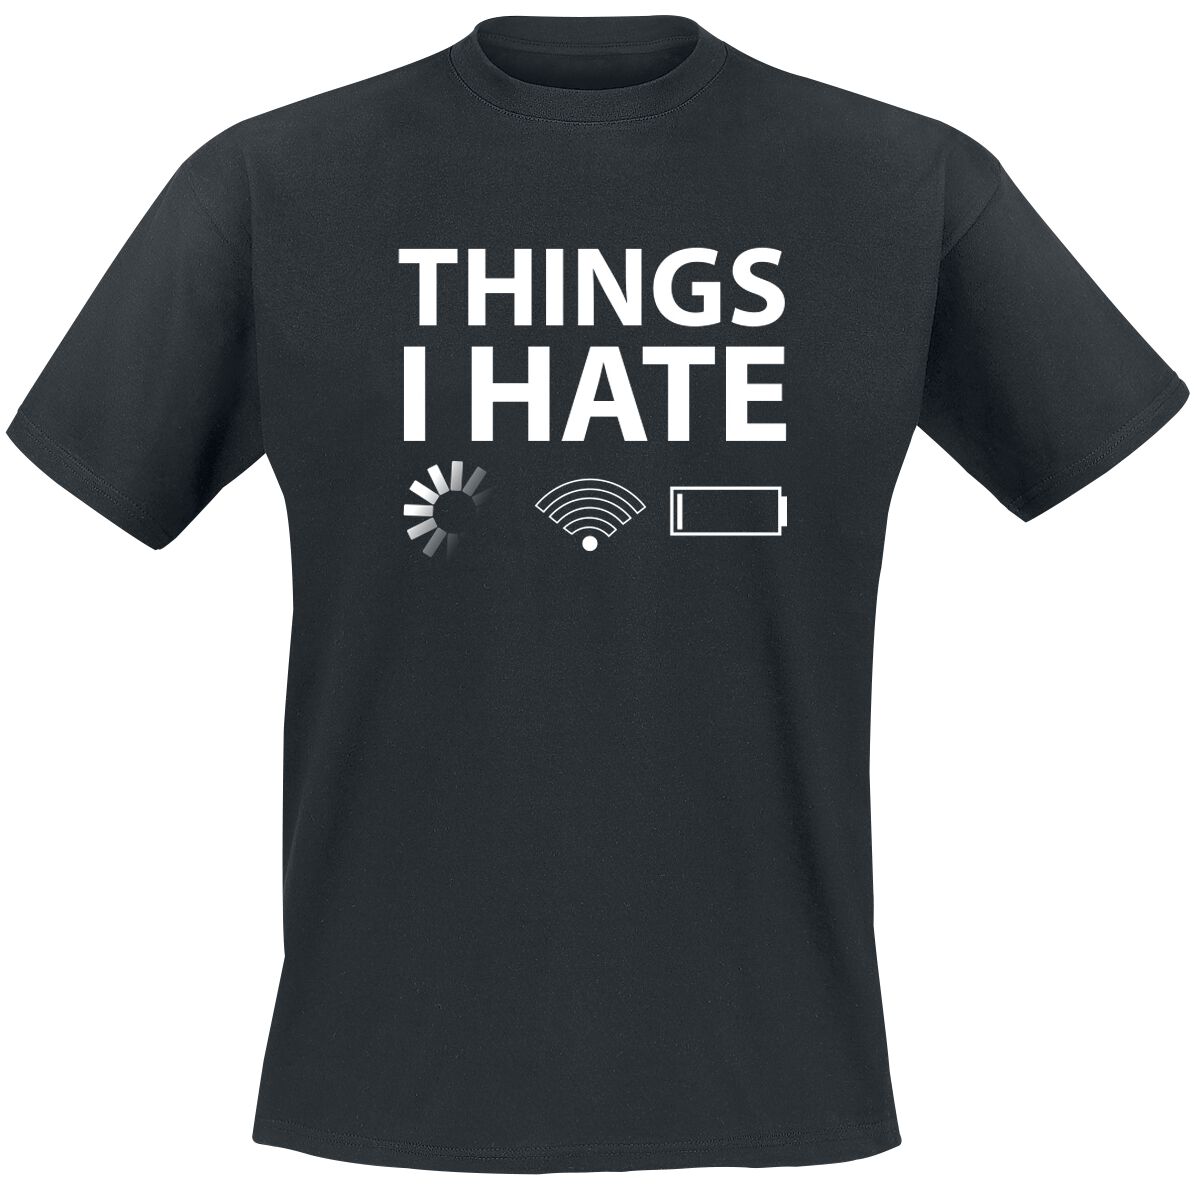 Sprüche T-Shirt - Things I Hate - S bis 3XL - für Männer - Größe S - schwarz